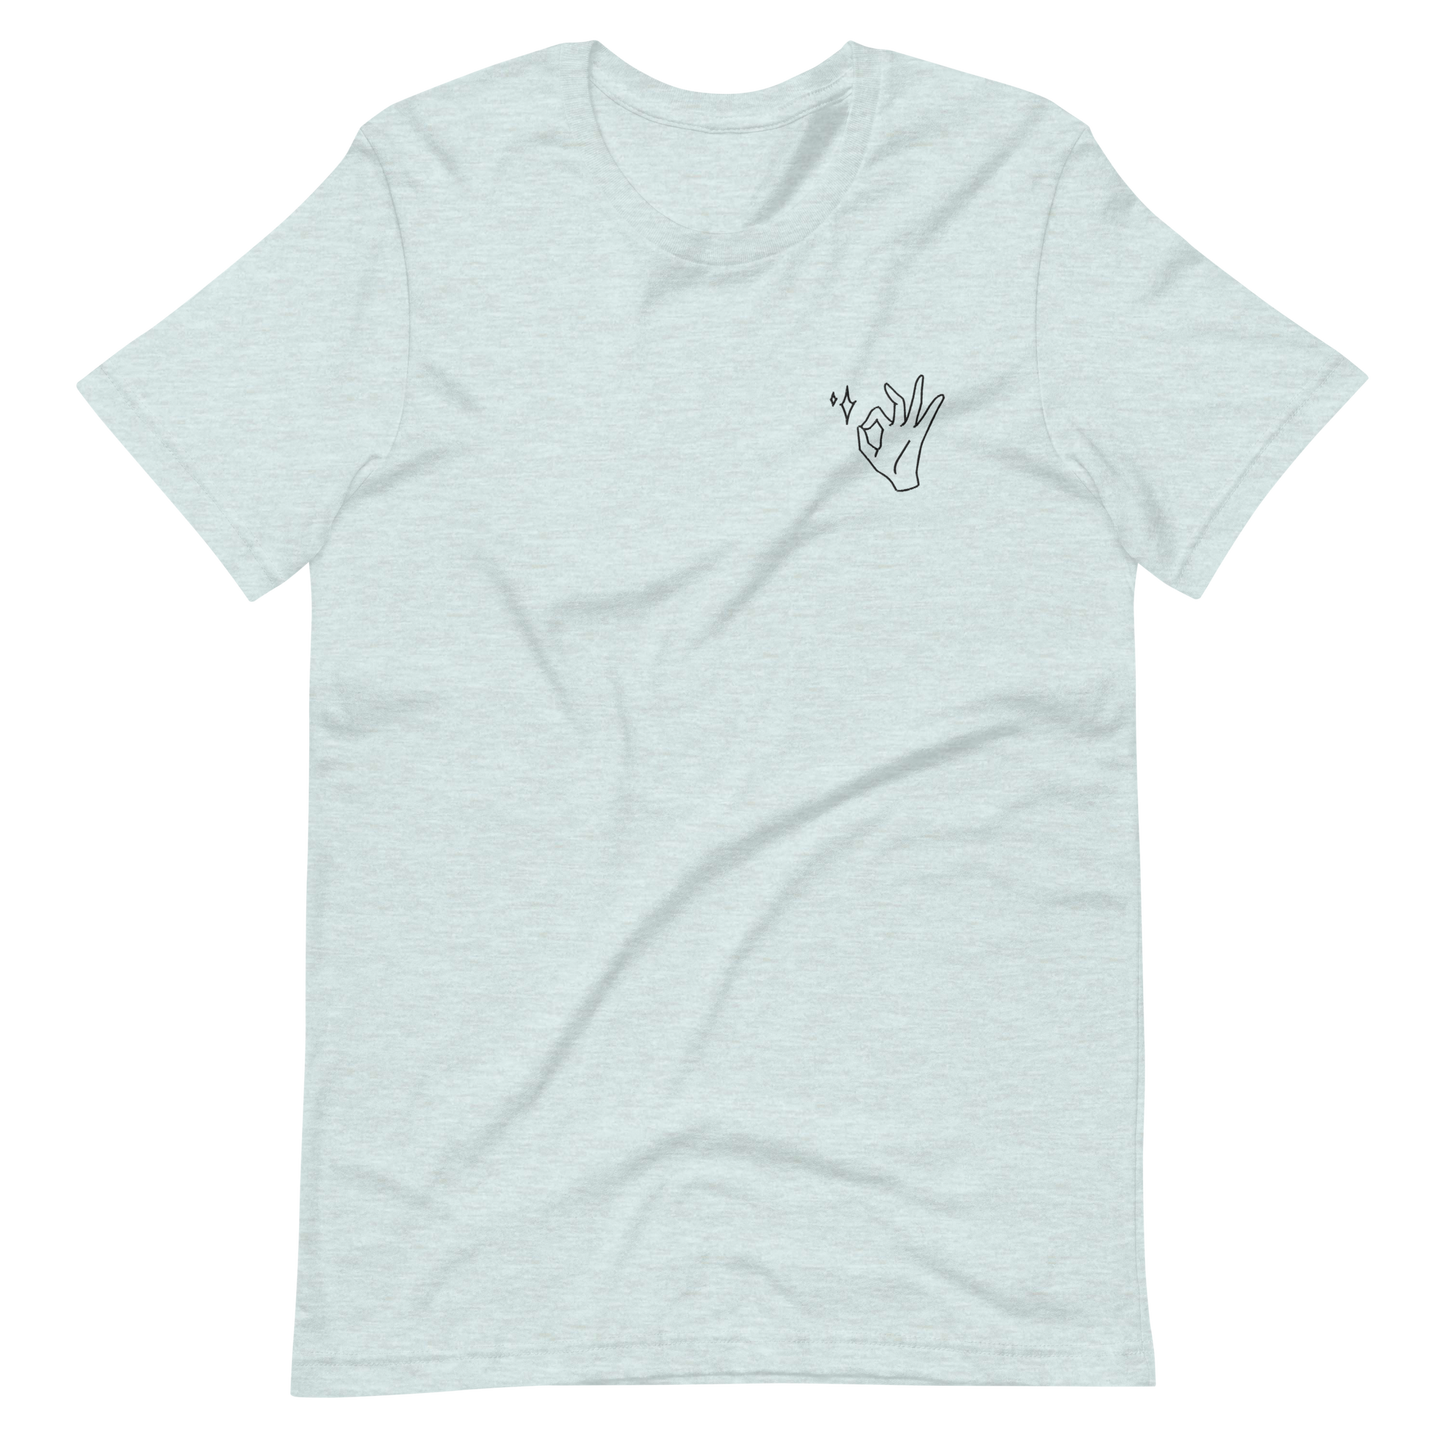 Navigator $ T-shirt